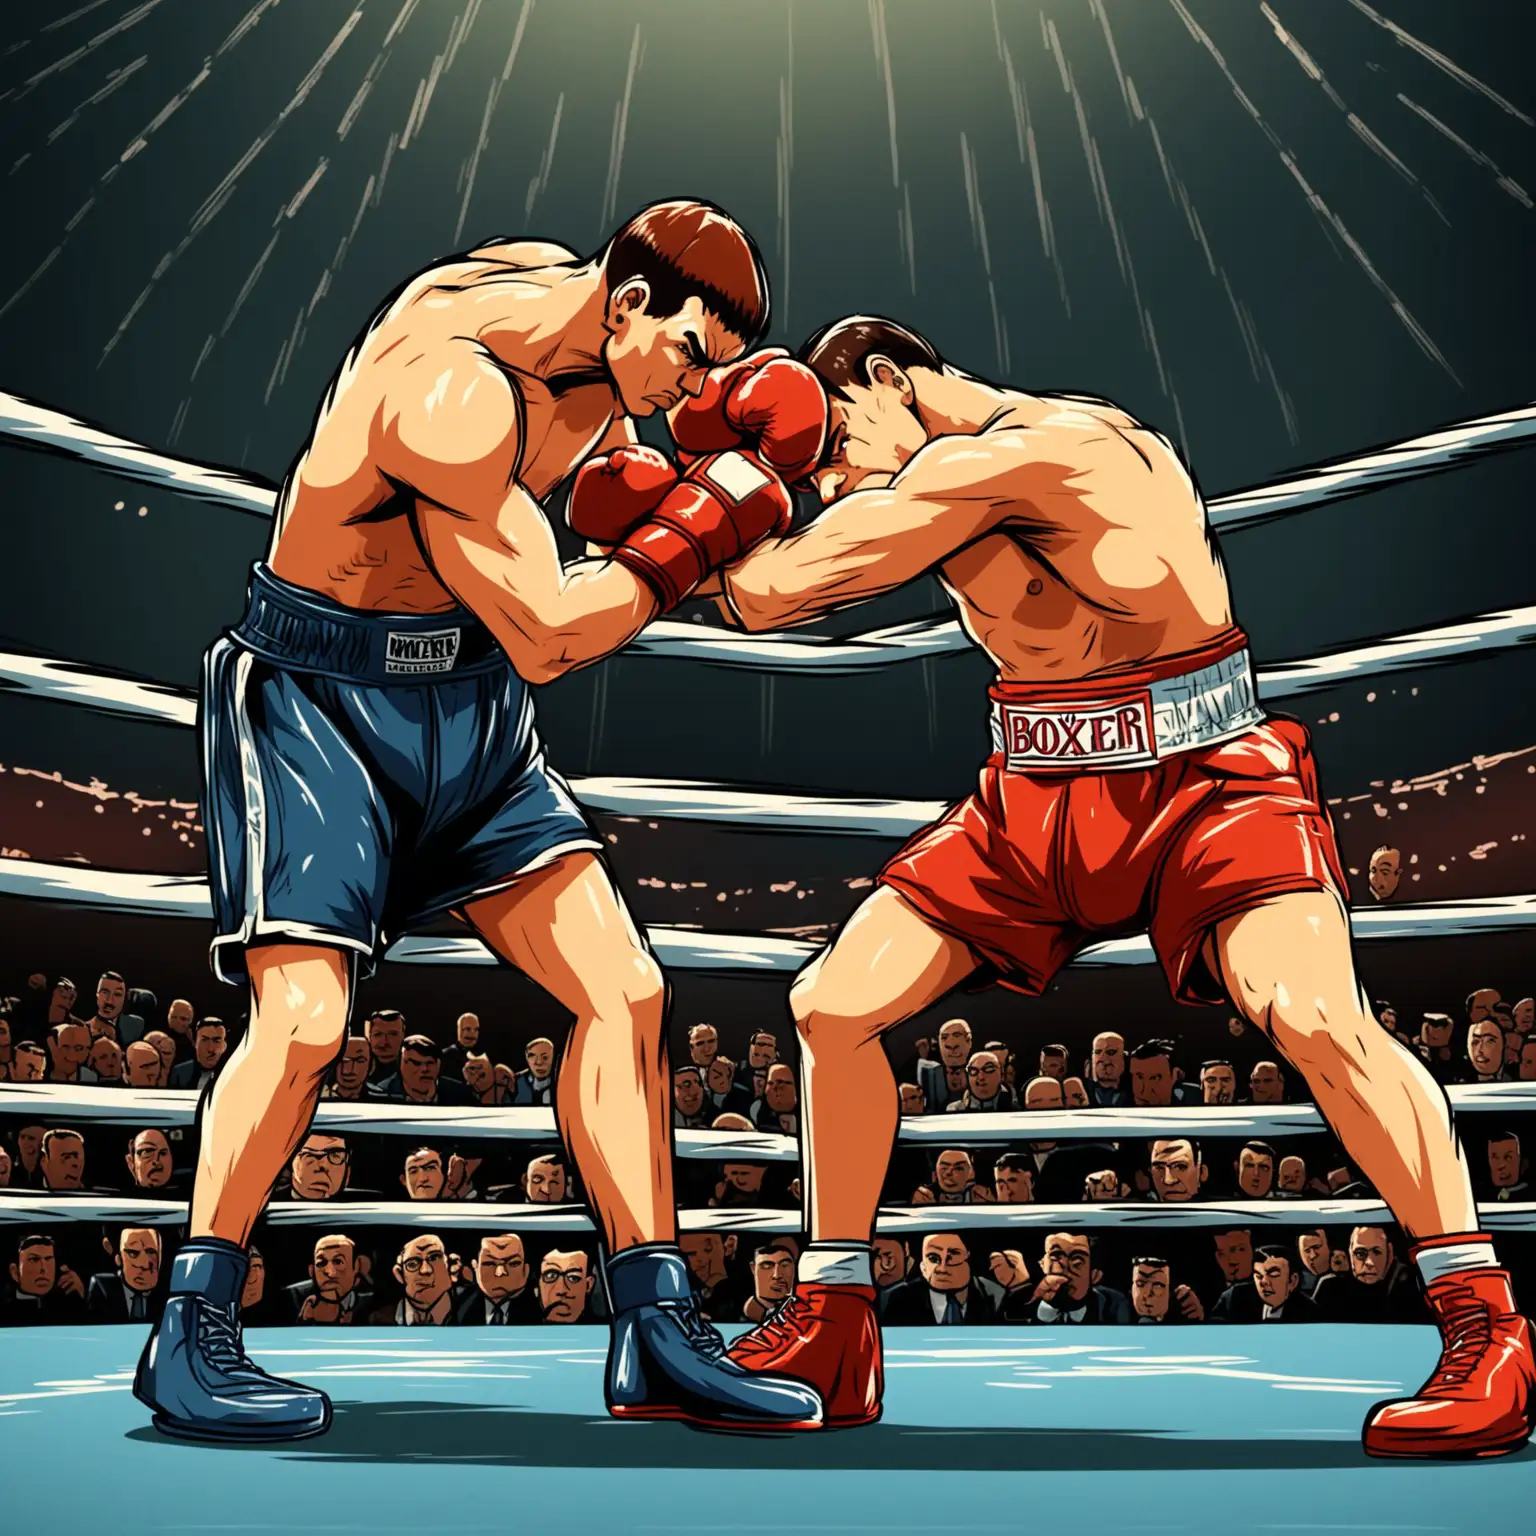 
dans un style dessin animé:
un boxeur au centre du ring qui s'accroche face a son adversaire